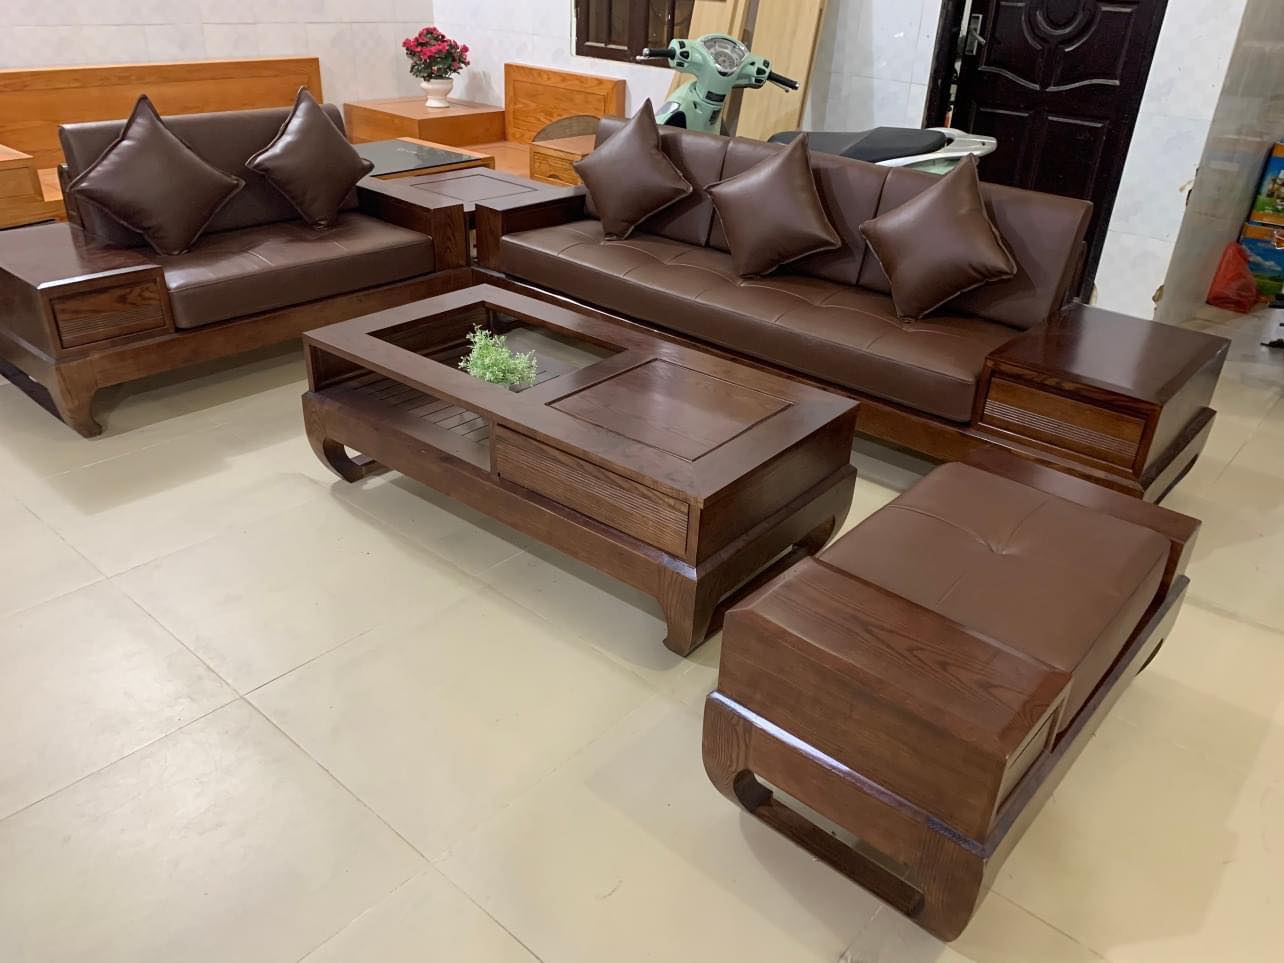 Bàn ghế sofa gỗ sồi 2m8x2m (Chú Thành, Ninh Bình) - Đồ Gỗ Ngọc Anh